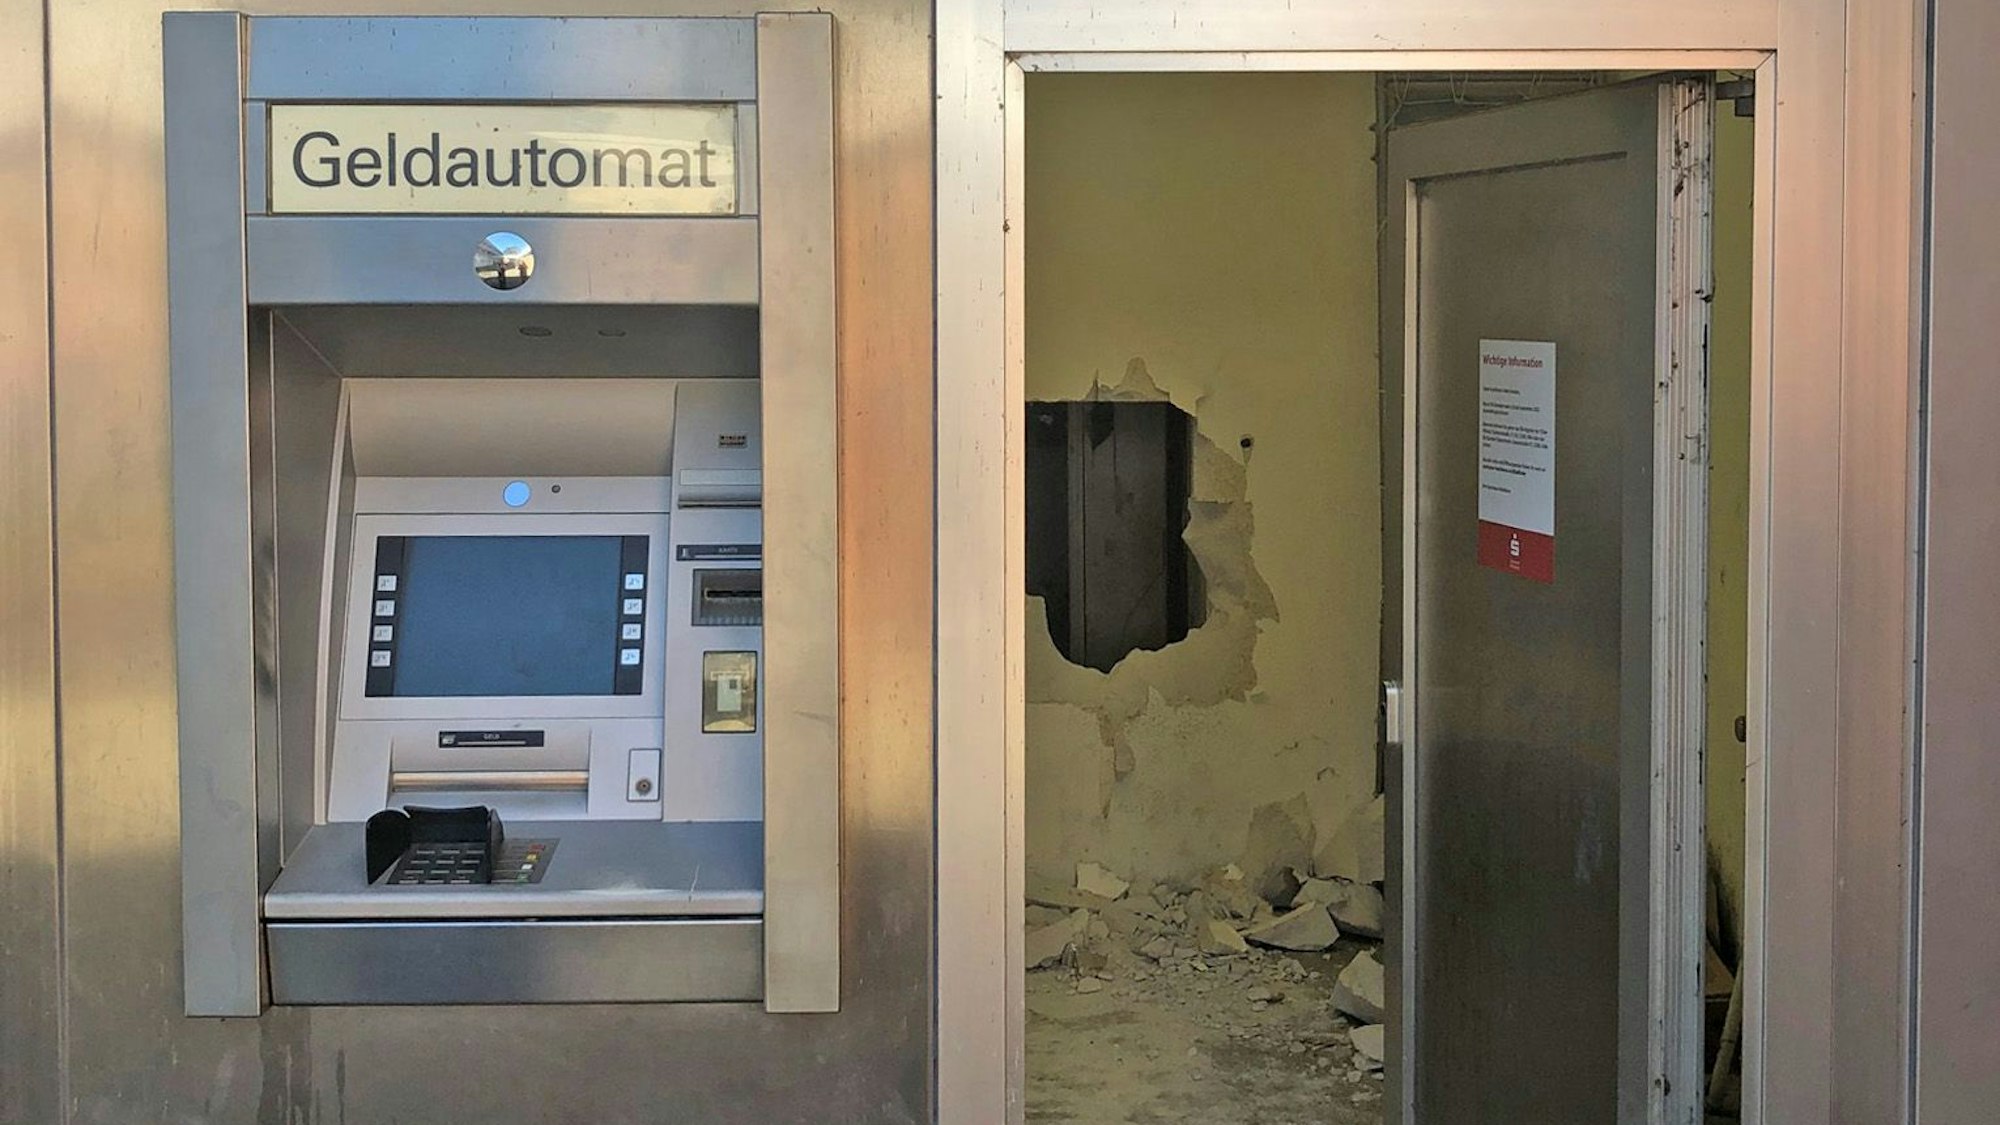 Geldautomat in einer Ladenfiliale, im Hintergrund sieht man eine durchbrochene Wand.